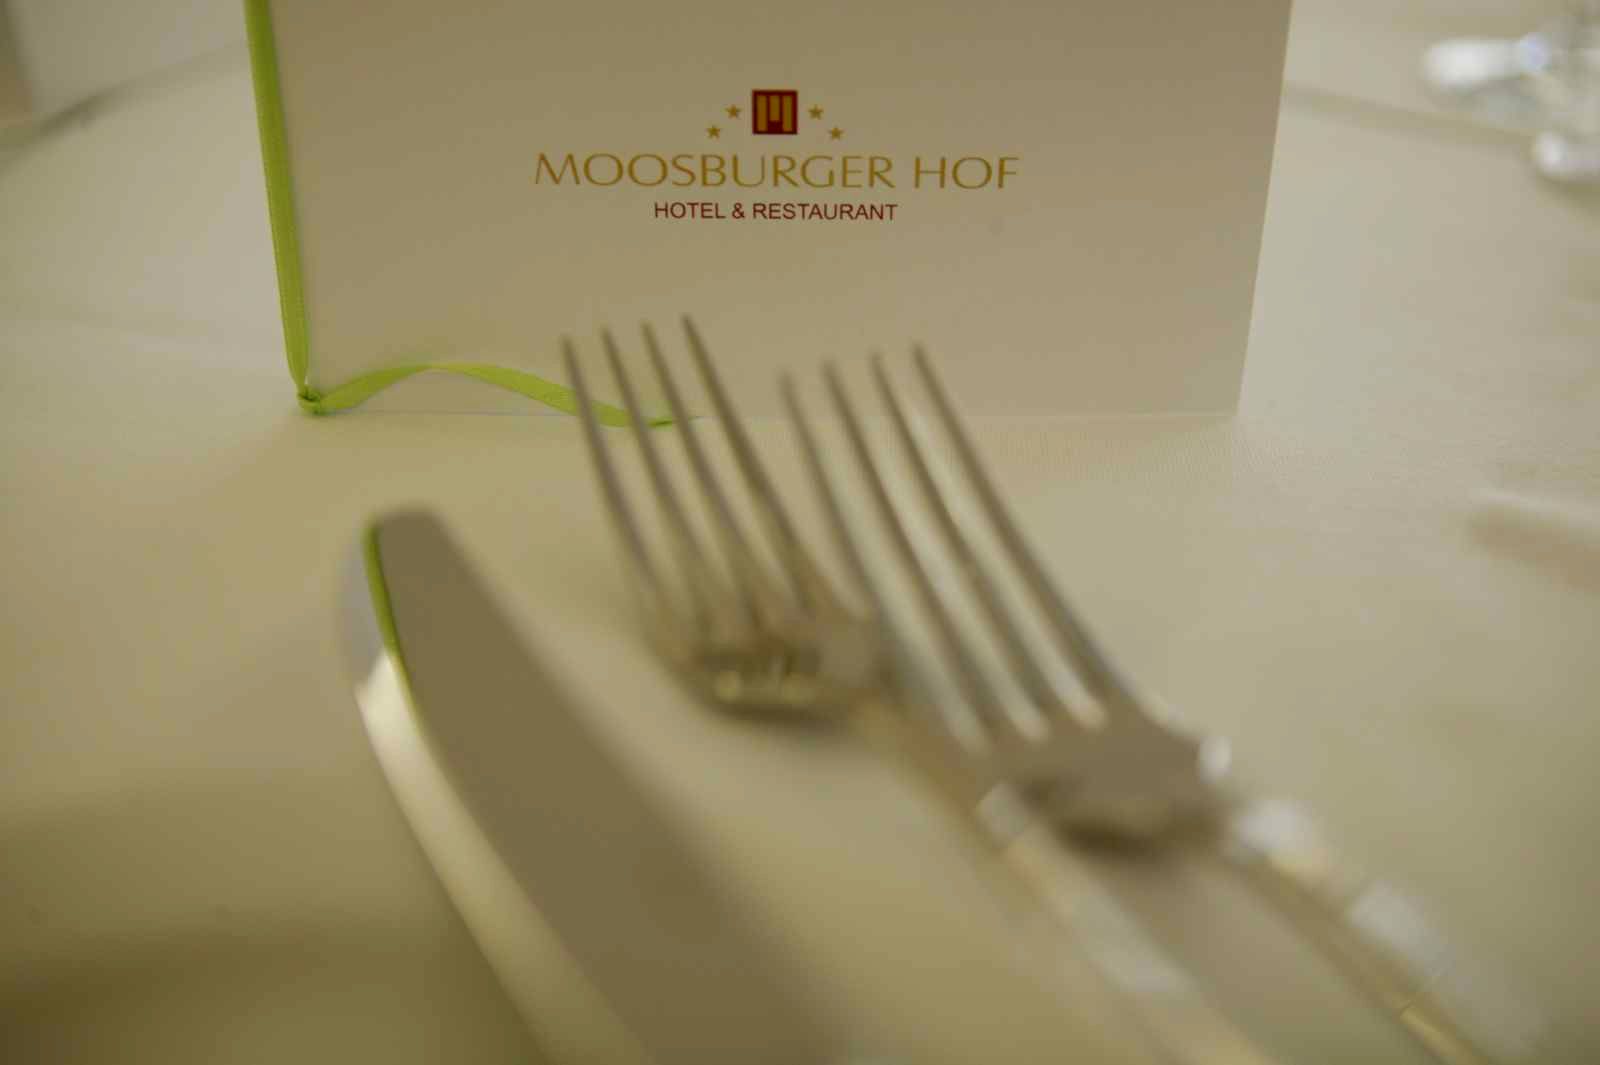 Moosburger Hof - Hotel & Restaurant & Bistro